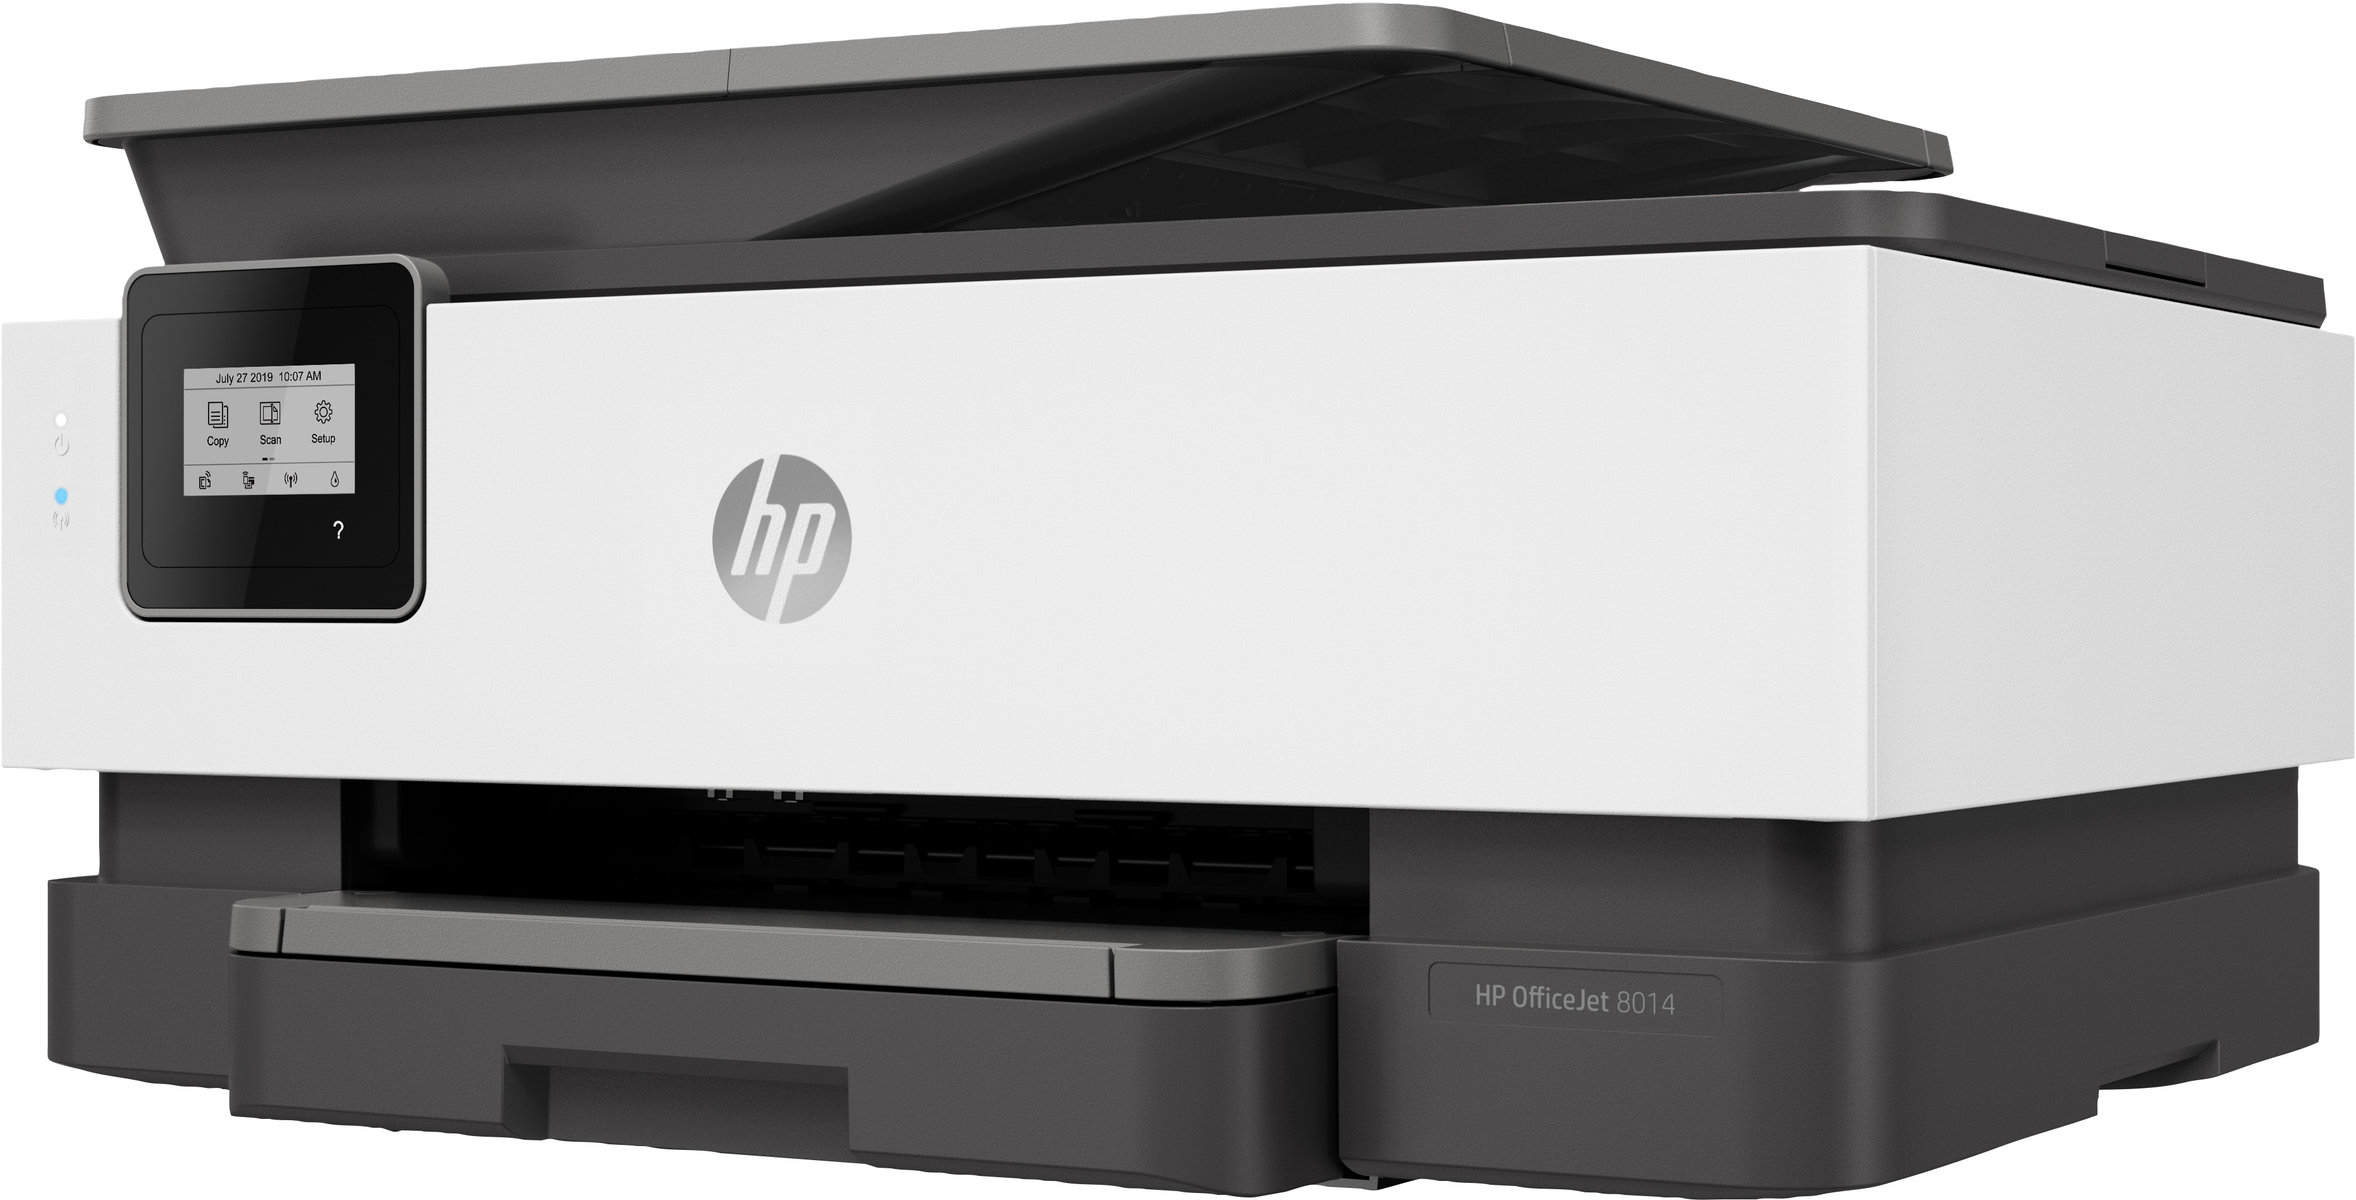 HP OFFICEJET Thermal ALL-IN-ONE Multifunktionsdrucker WLAN 8014 Inkjet